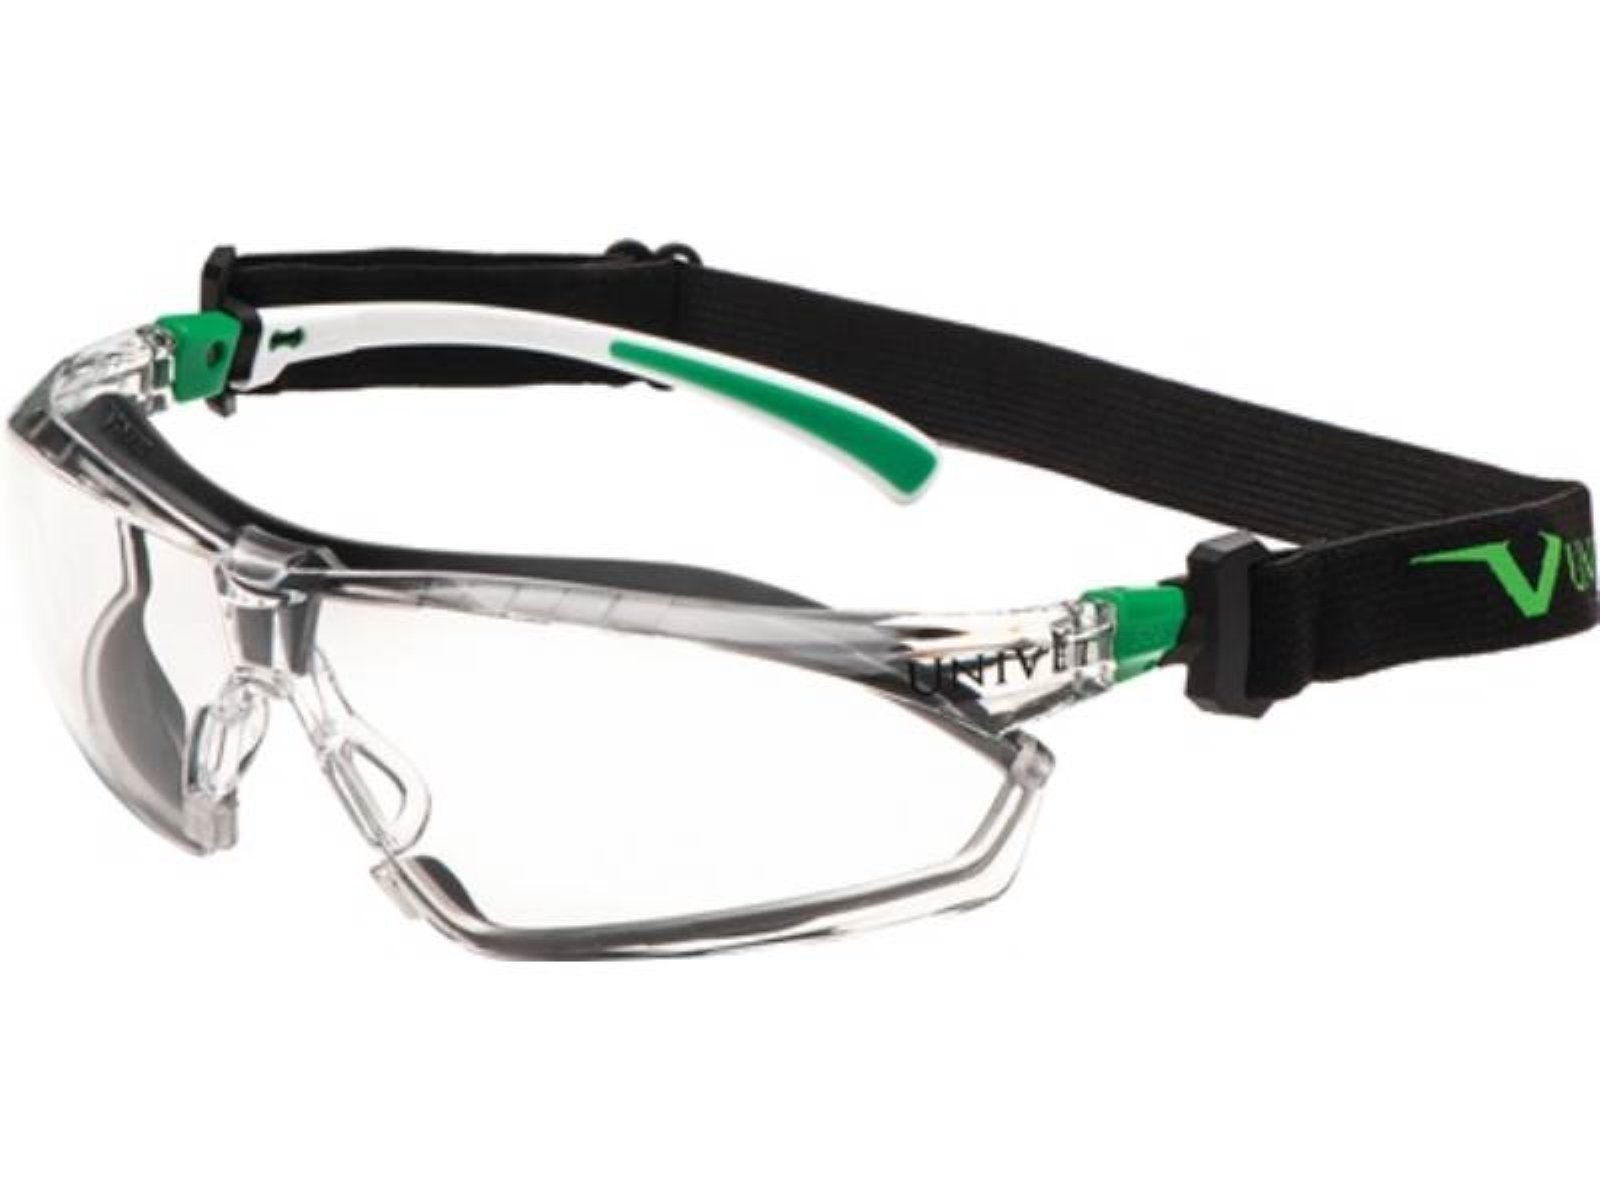 Univet Arbeitsschutzbrille Schutzbrille 506 UP Hybrid EN 166,EN 170 Bügel weiß grün,Scheibe kl